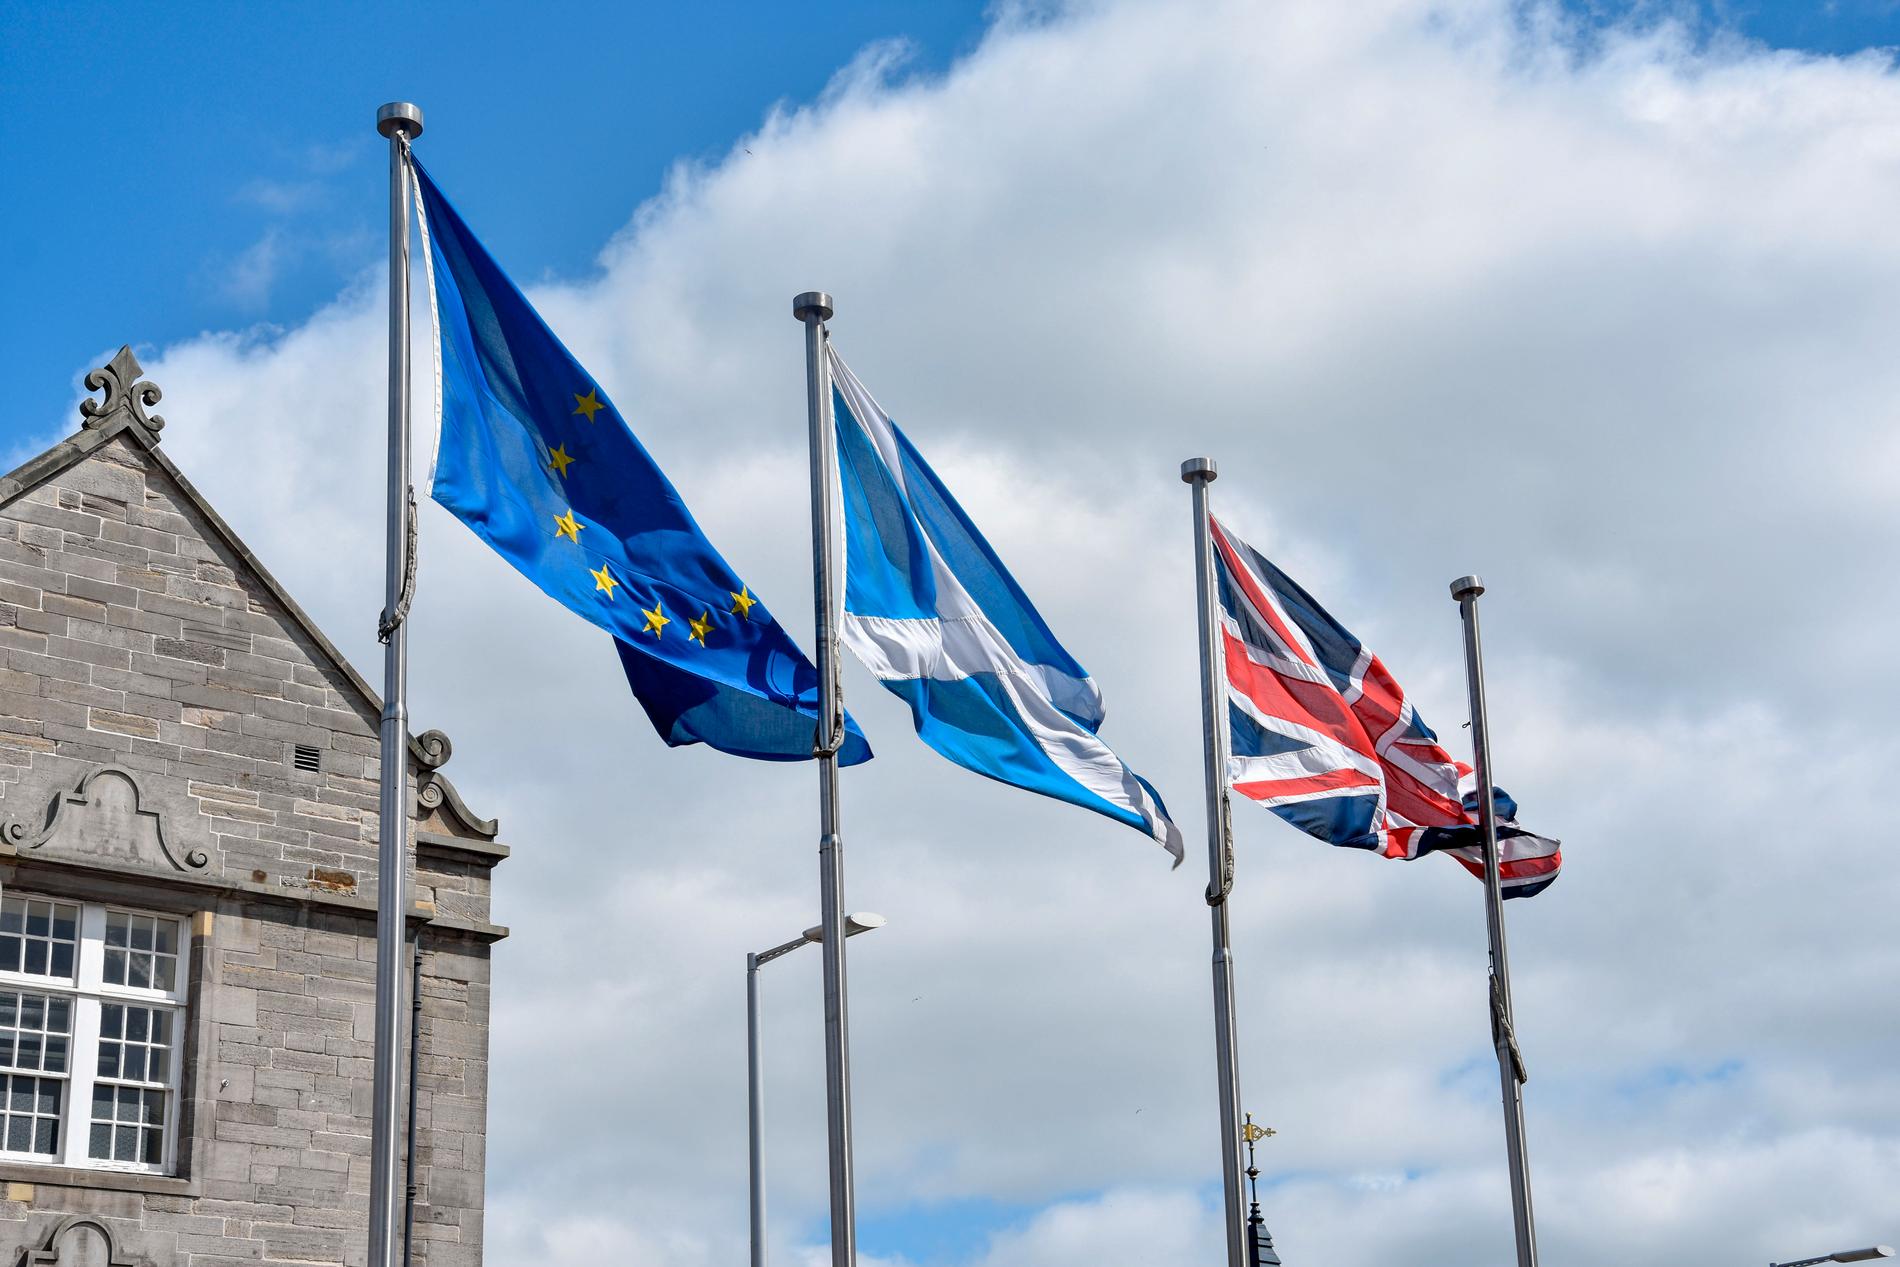 Trots EU-utträdet fladdrar EU-flaggan fortfarande bredvid Skottlands och Storbritanniens flaggor utanför det skotska parlamentet i Holyrood i Edinburgh. Den här bilden är dock från 2019. Arkivfoto.